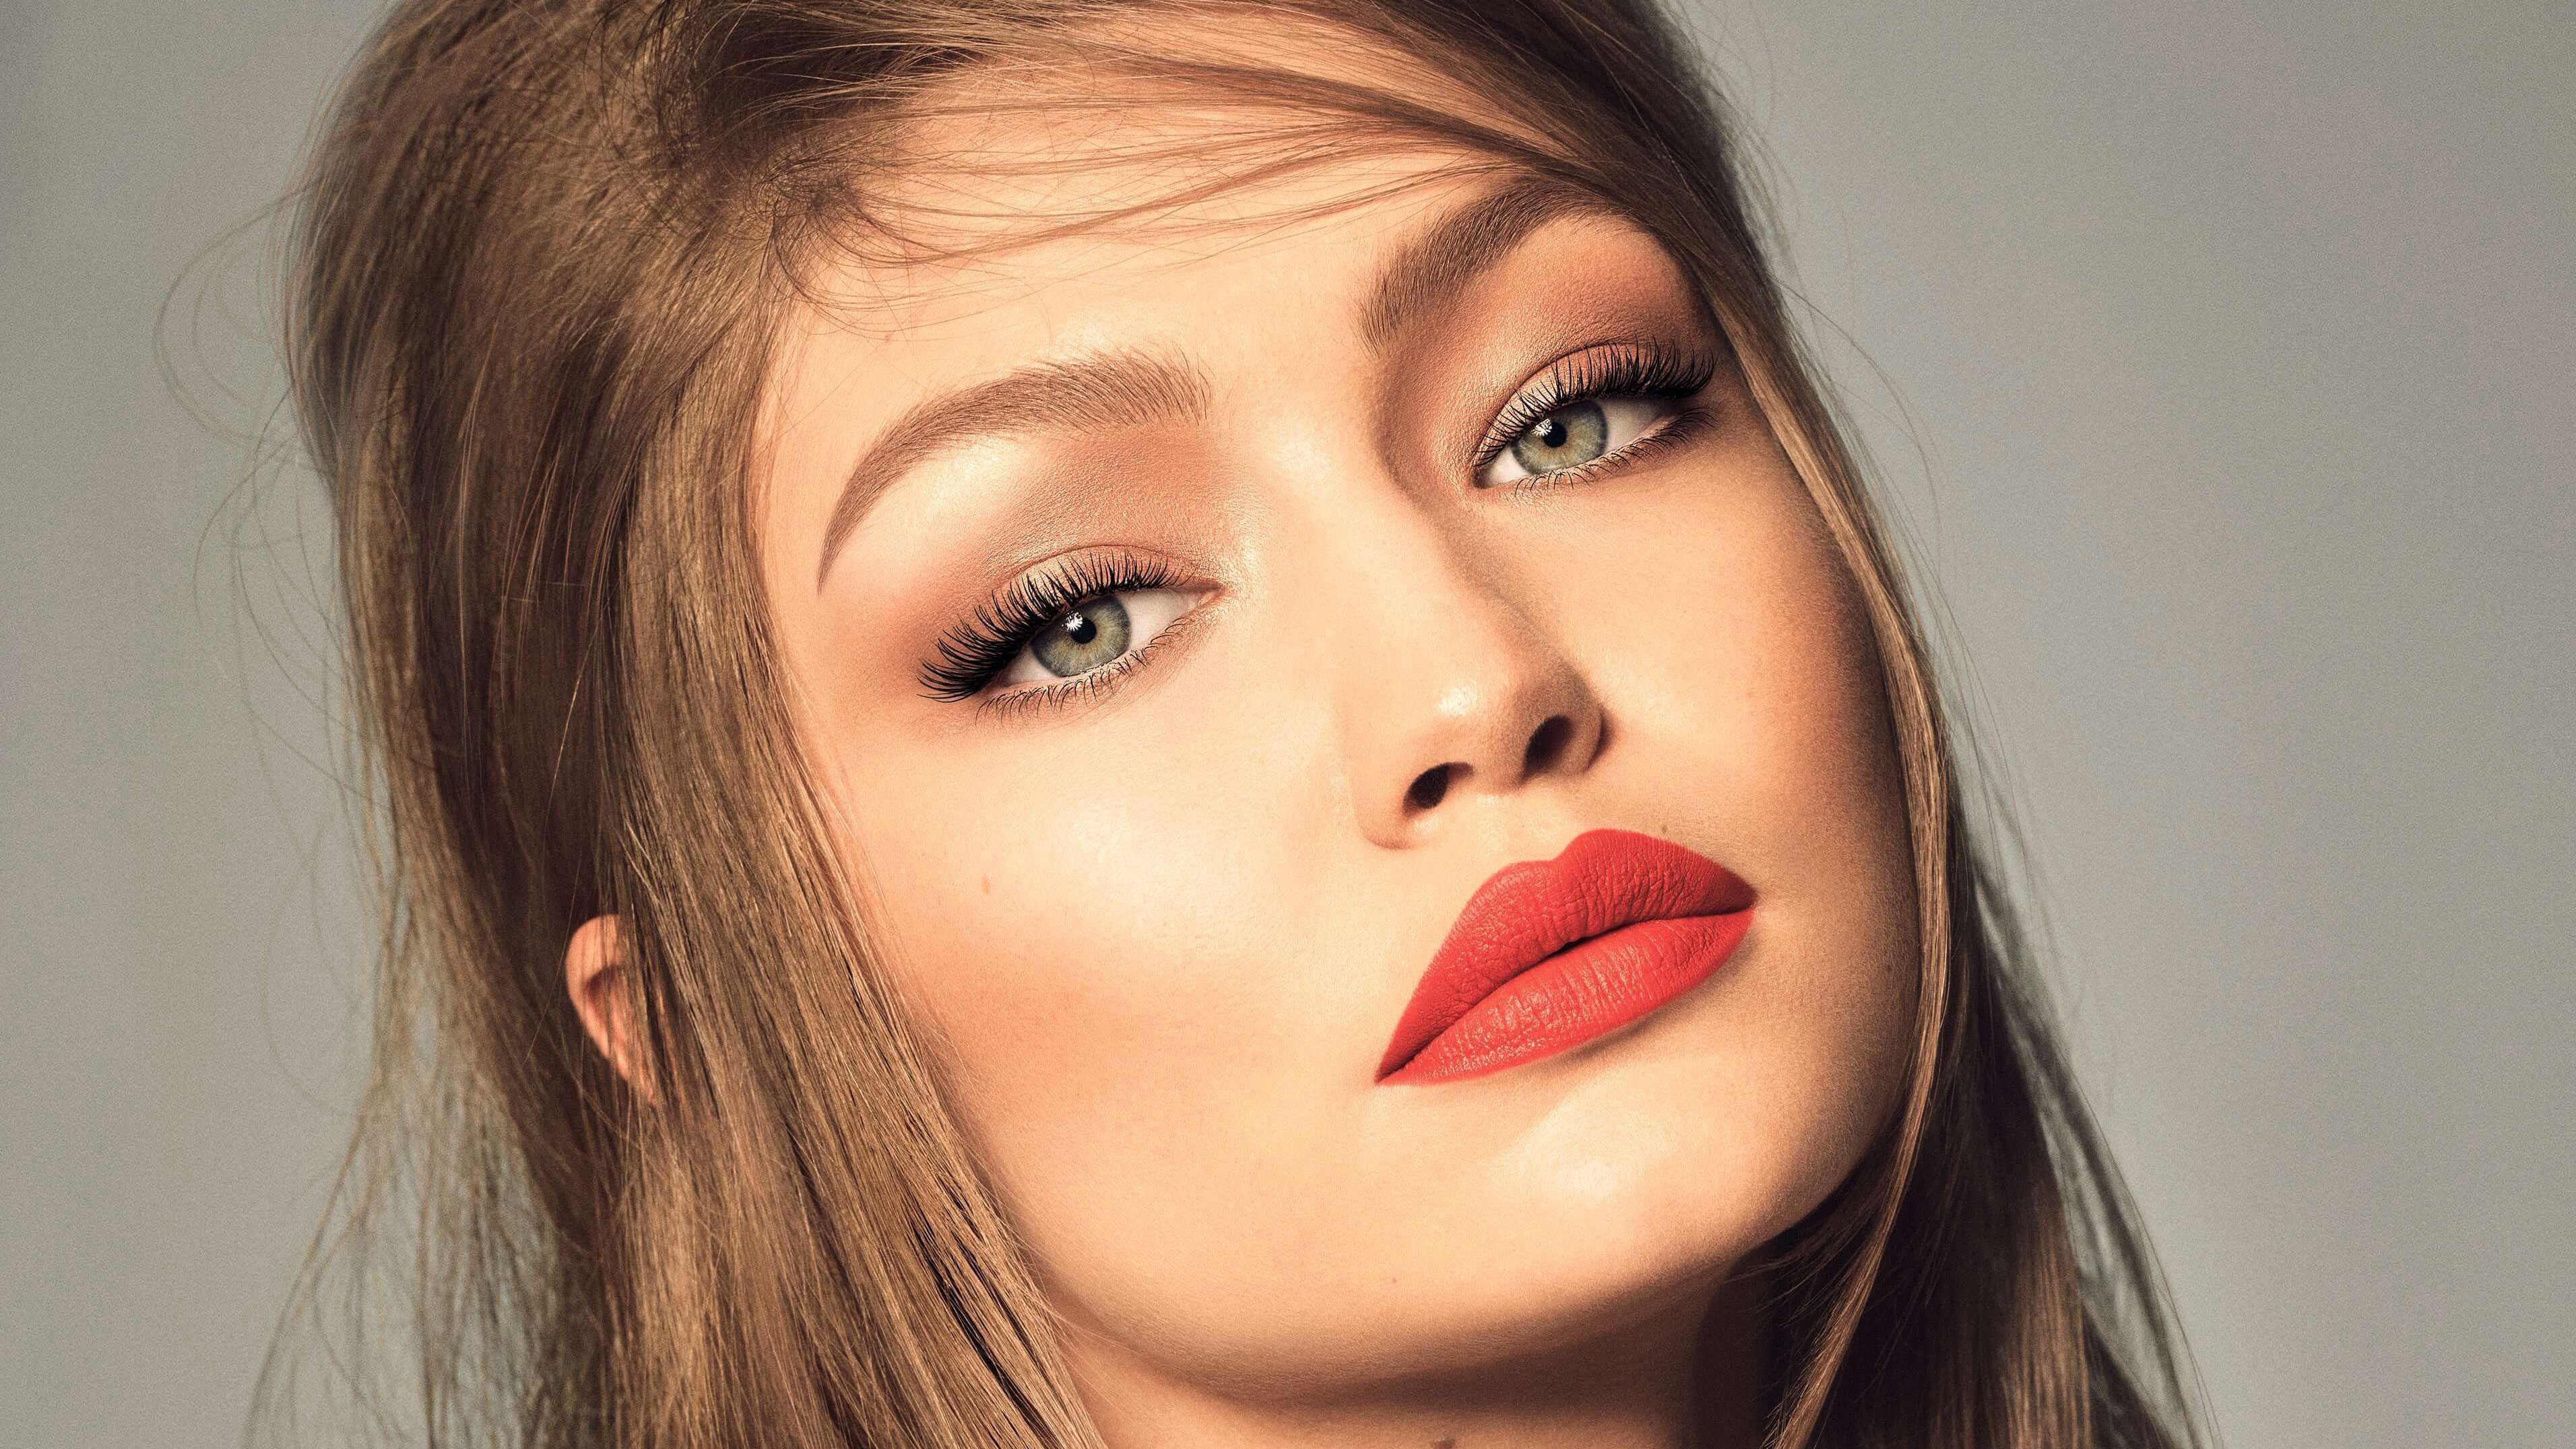 Cute Model Gigi Hadid 4k Wallpaper - Victoria's Secret Models Faces - HD Wallpaper 